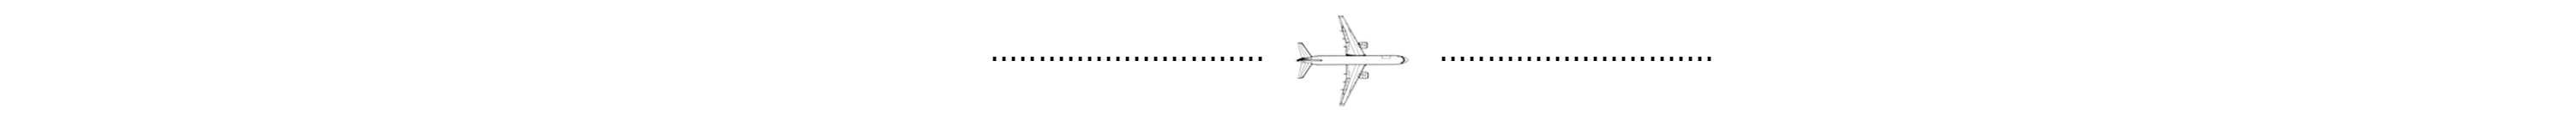 Plane Separator Image